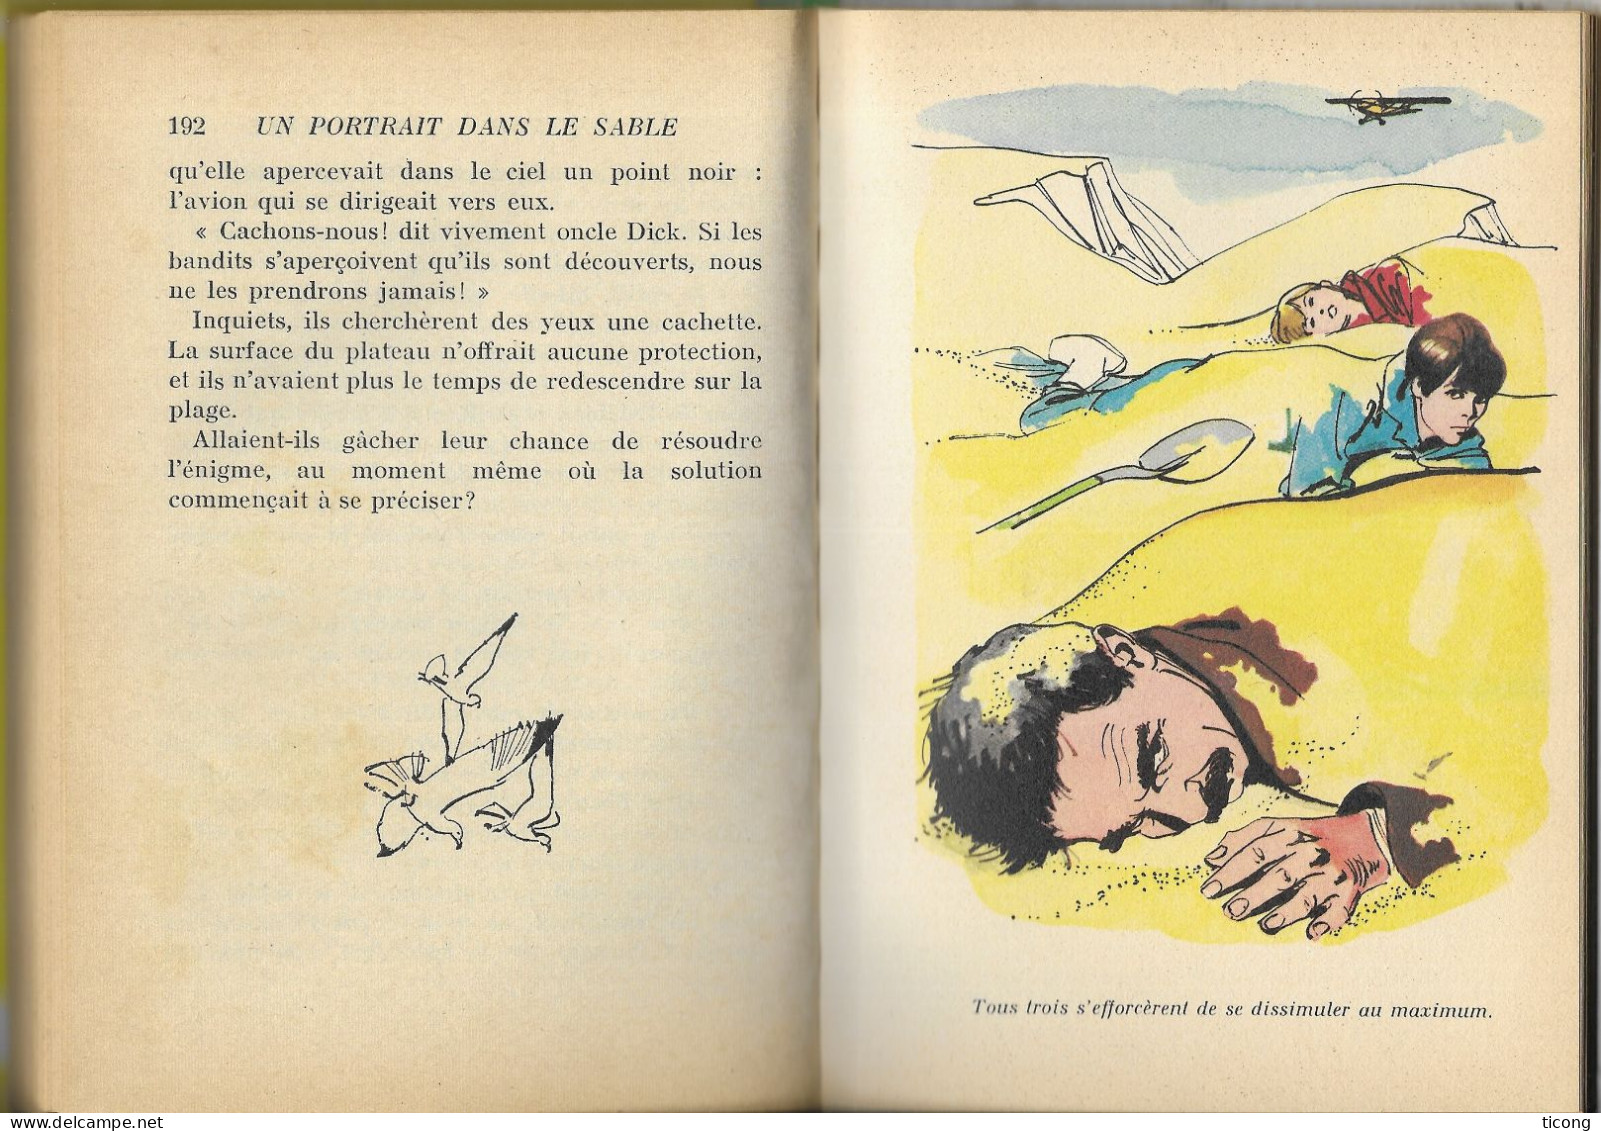 UNE ENQUETE DES SOEURS PARKER DE CAROLINE QUINE - UN PORTRAIT DANS LE SABLE, EDITION ORIGINALE FRANCAISE 1969, A VOIR - Biblioteca Verde